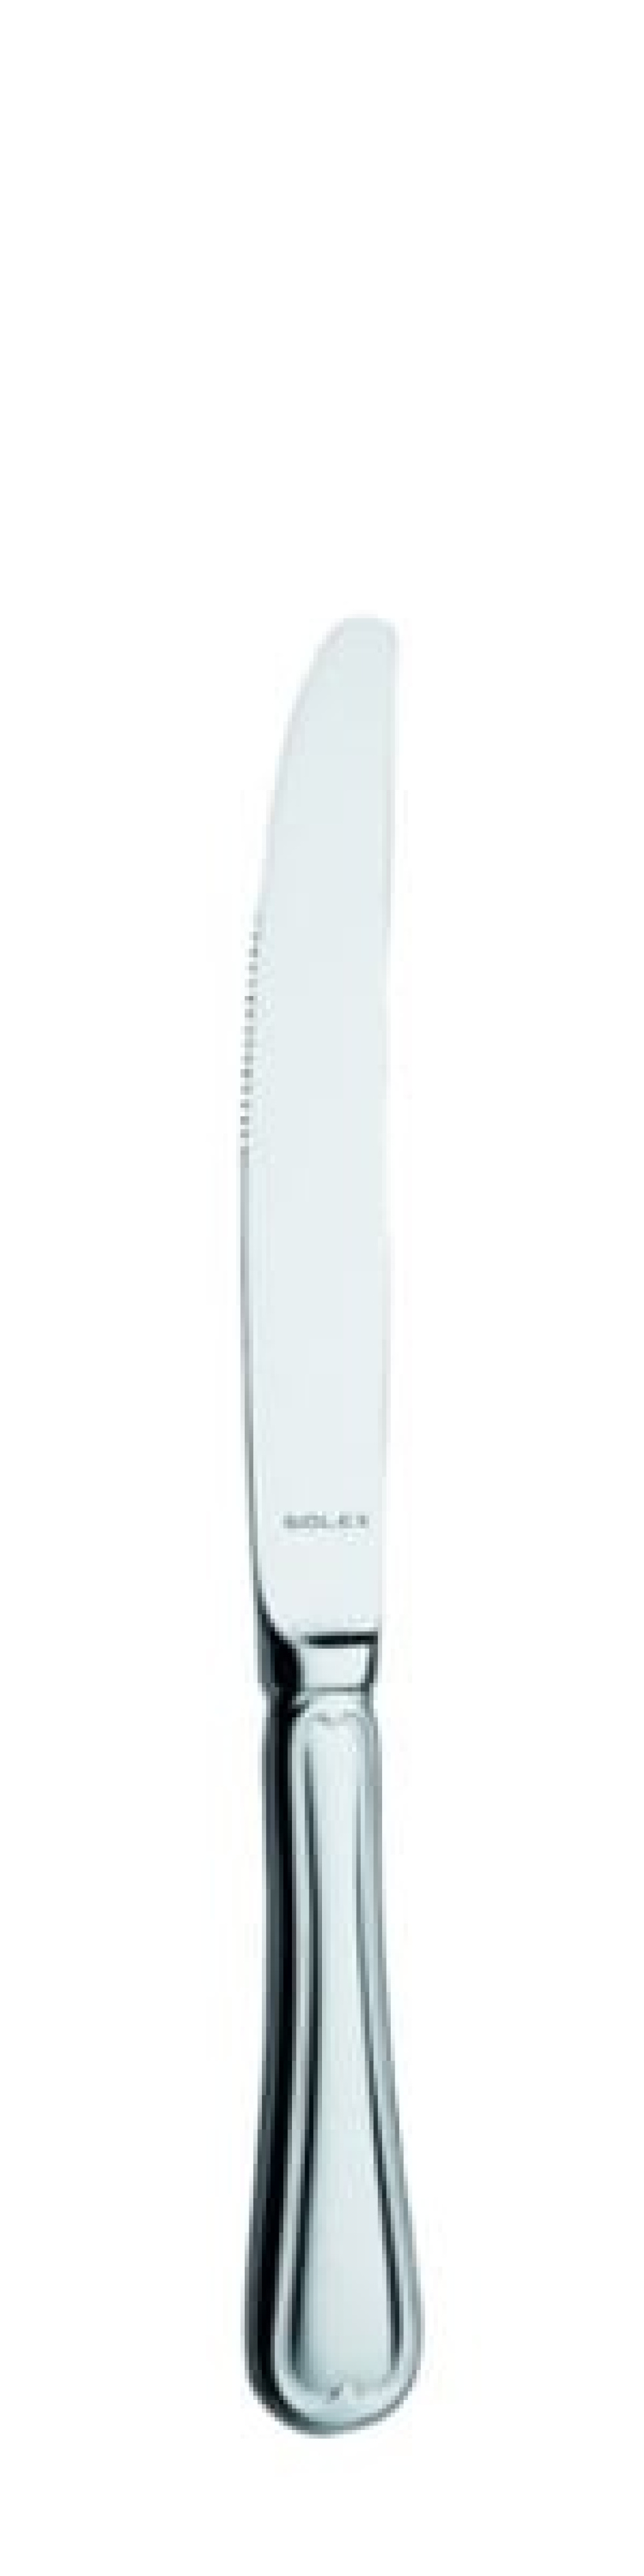 Laila Tafelmesser 224 mm - Solex in der Gruppe Tischgedeck / Besteck / Messer bei The Kitchen Lab (1284-21546)